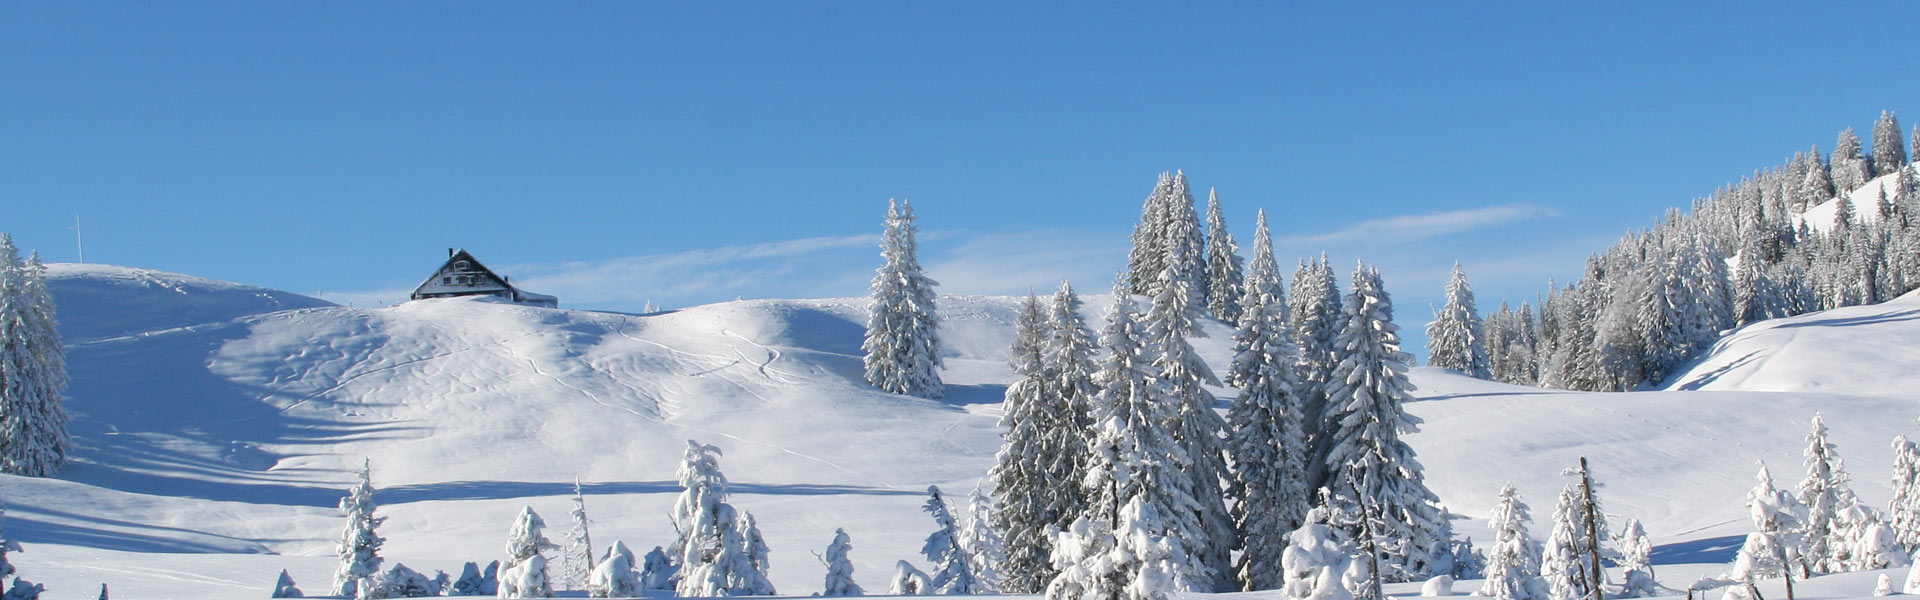 Schneeschuhwandern und Berghüttenübernachtung inklusive Halbpension. 2 Tage auf Tour mit Schneeschuhen